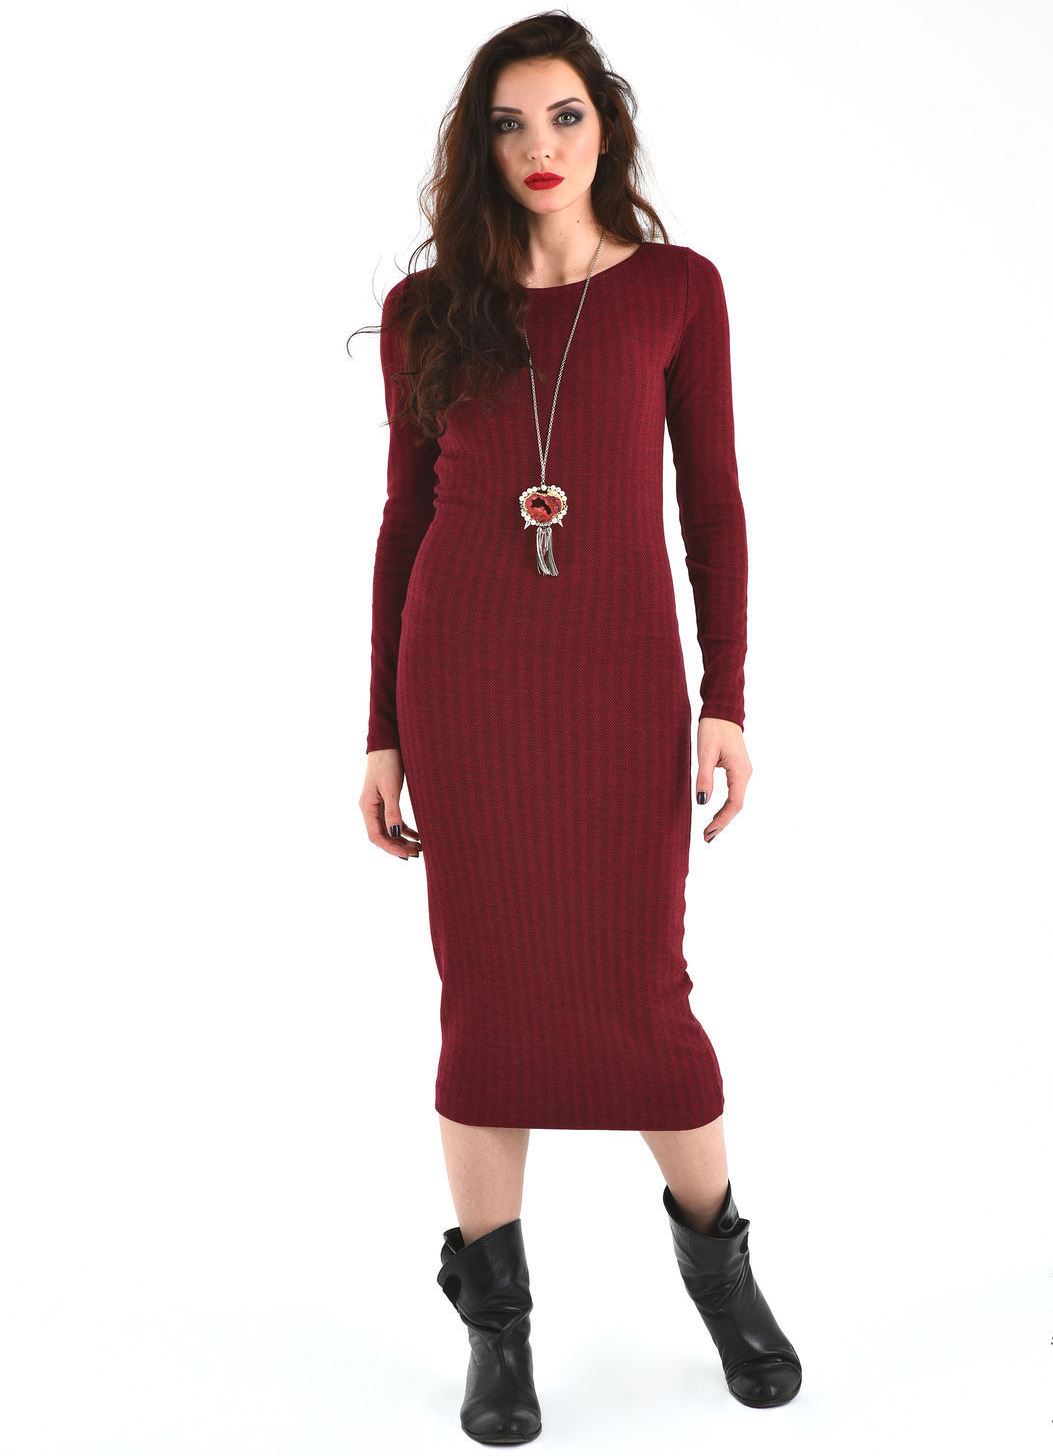 Обувь лапша. Бордовое трикотажное платье. Платье лапша бордовое. Платье лапша и обувь. Бордовое платье зимнее.